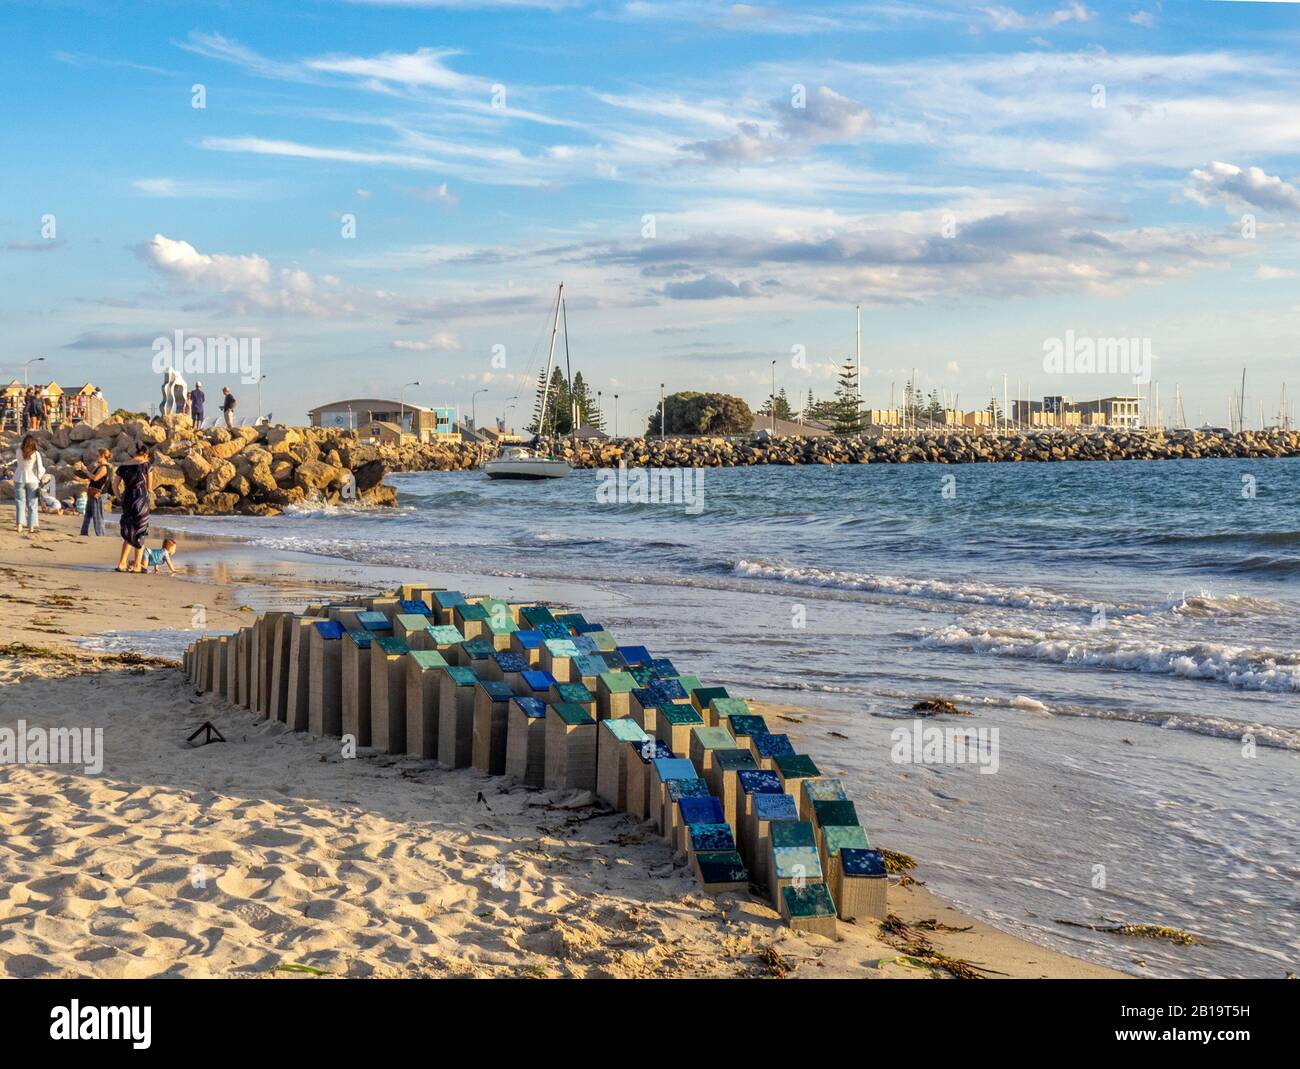 Sculpture À Bathers Beach 2020 exposition en plein air Tideline Kirsten Makinson Heloise et Roberts sculpteurs artistes Fremantle Australie occidentale. Banque D'Images